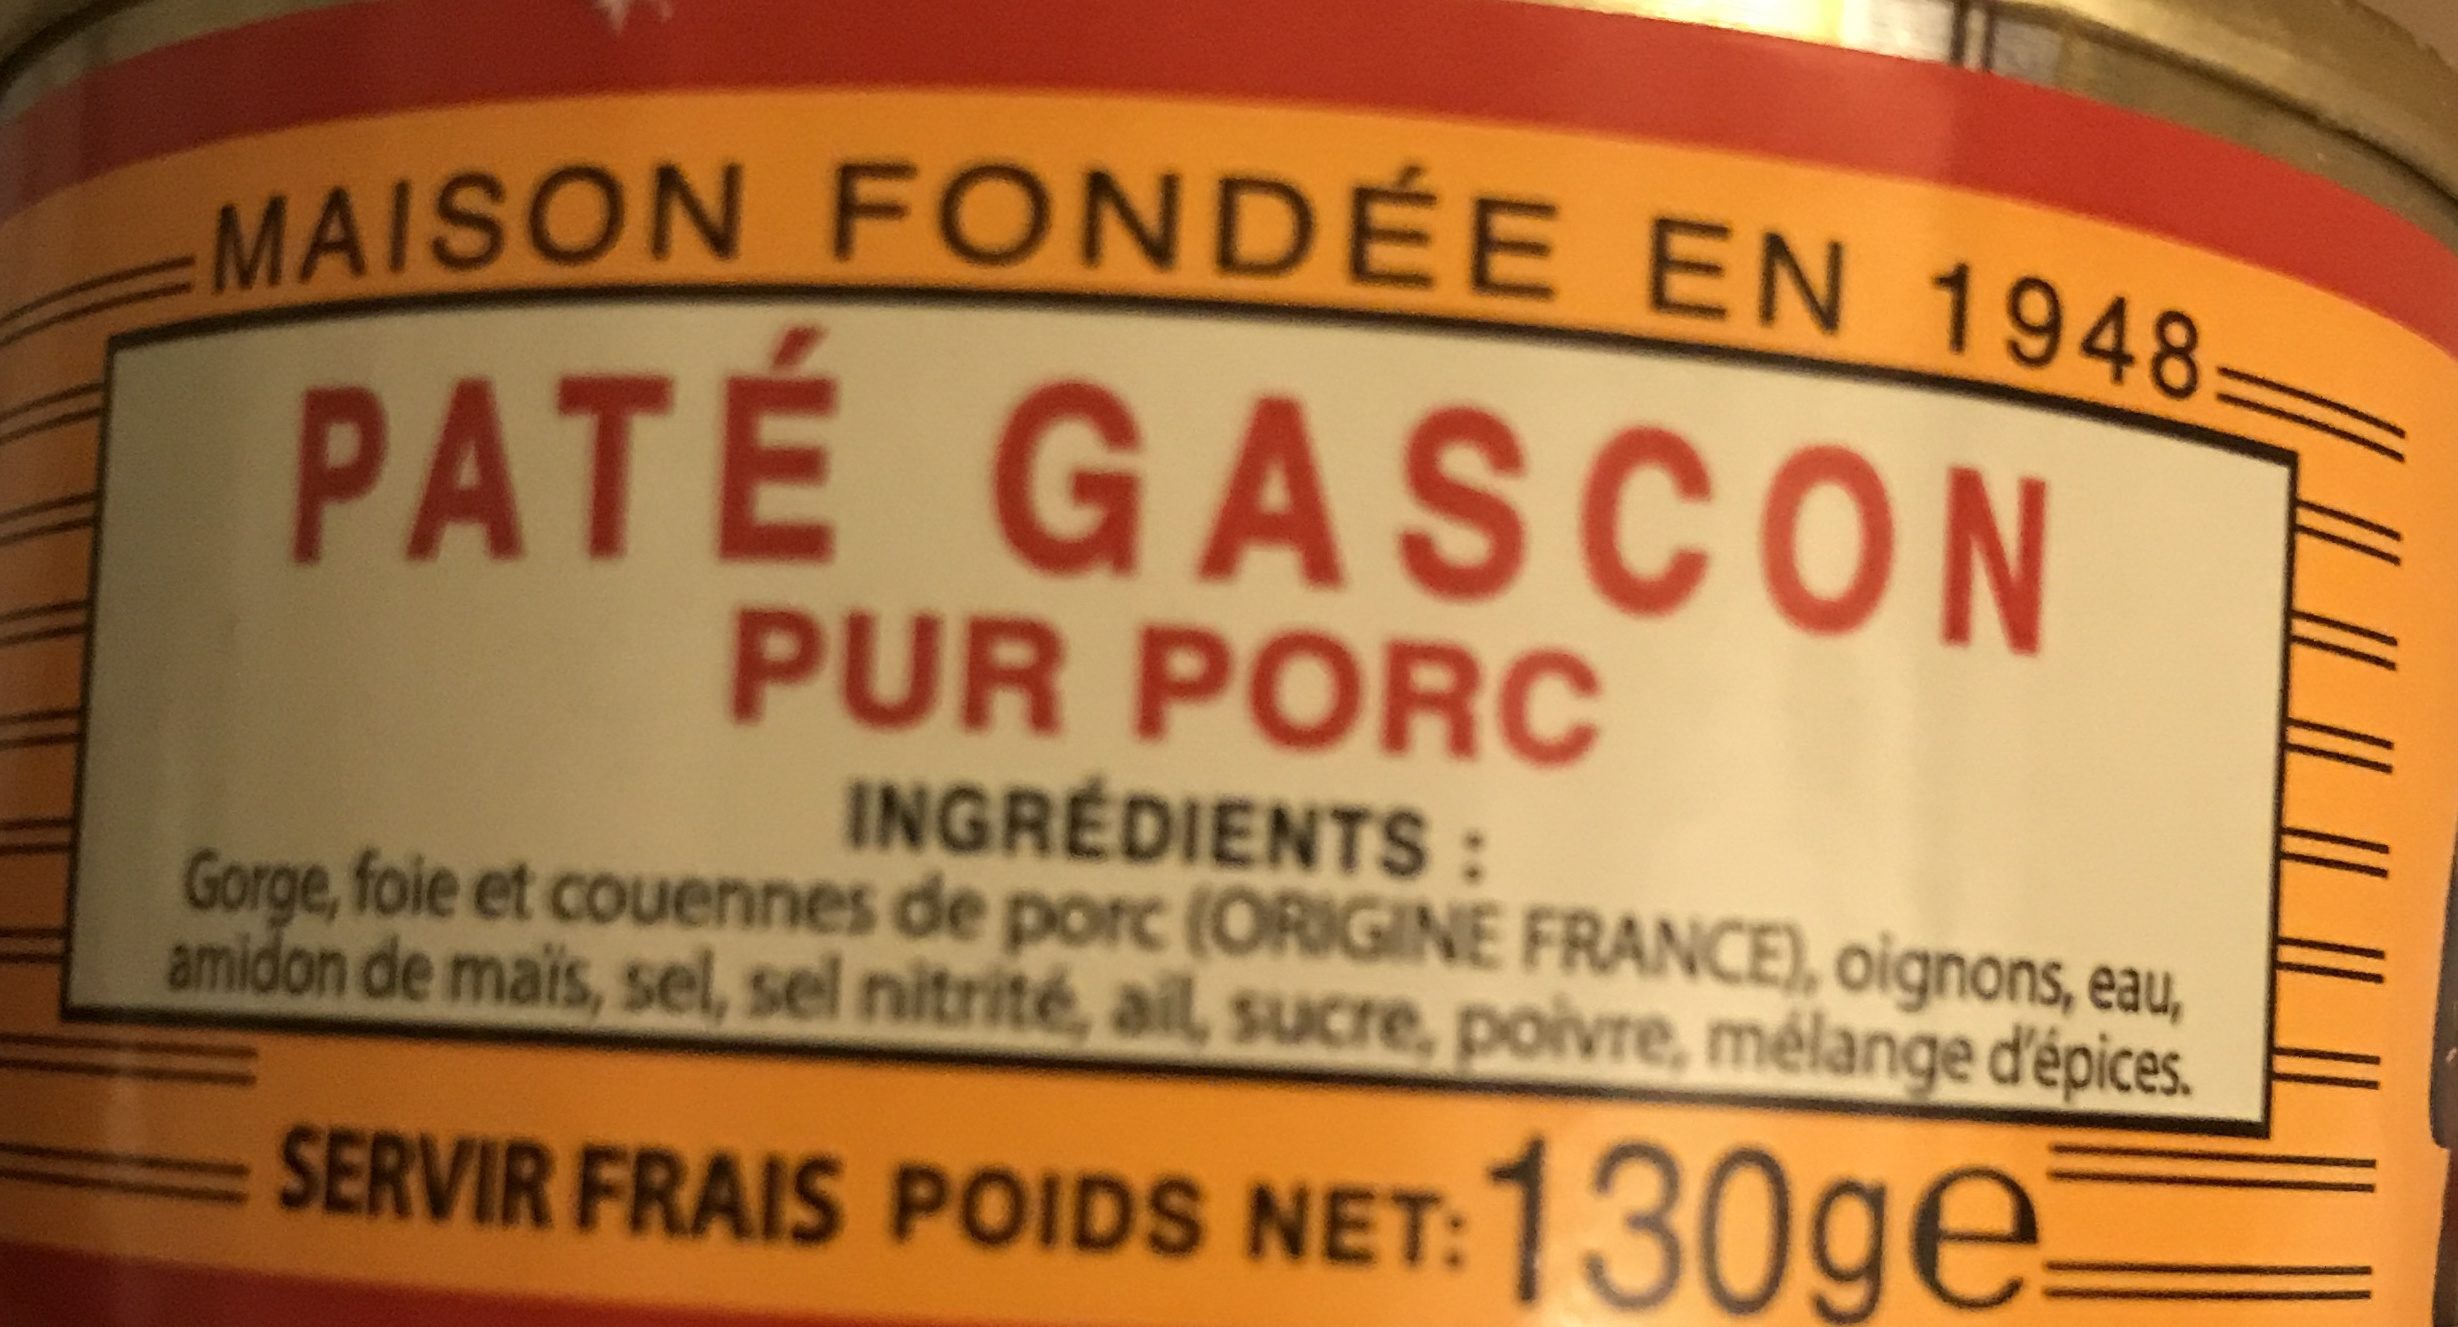 Pâté gascon pour porc - Ingredients - fr